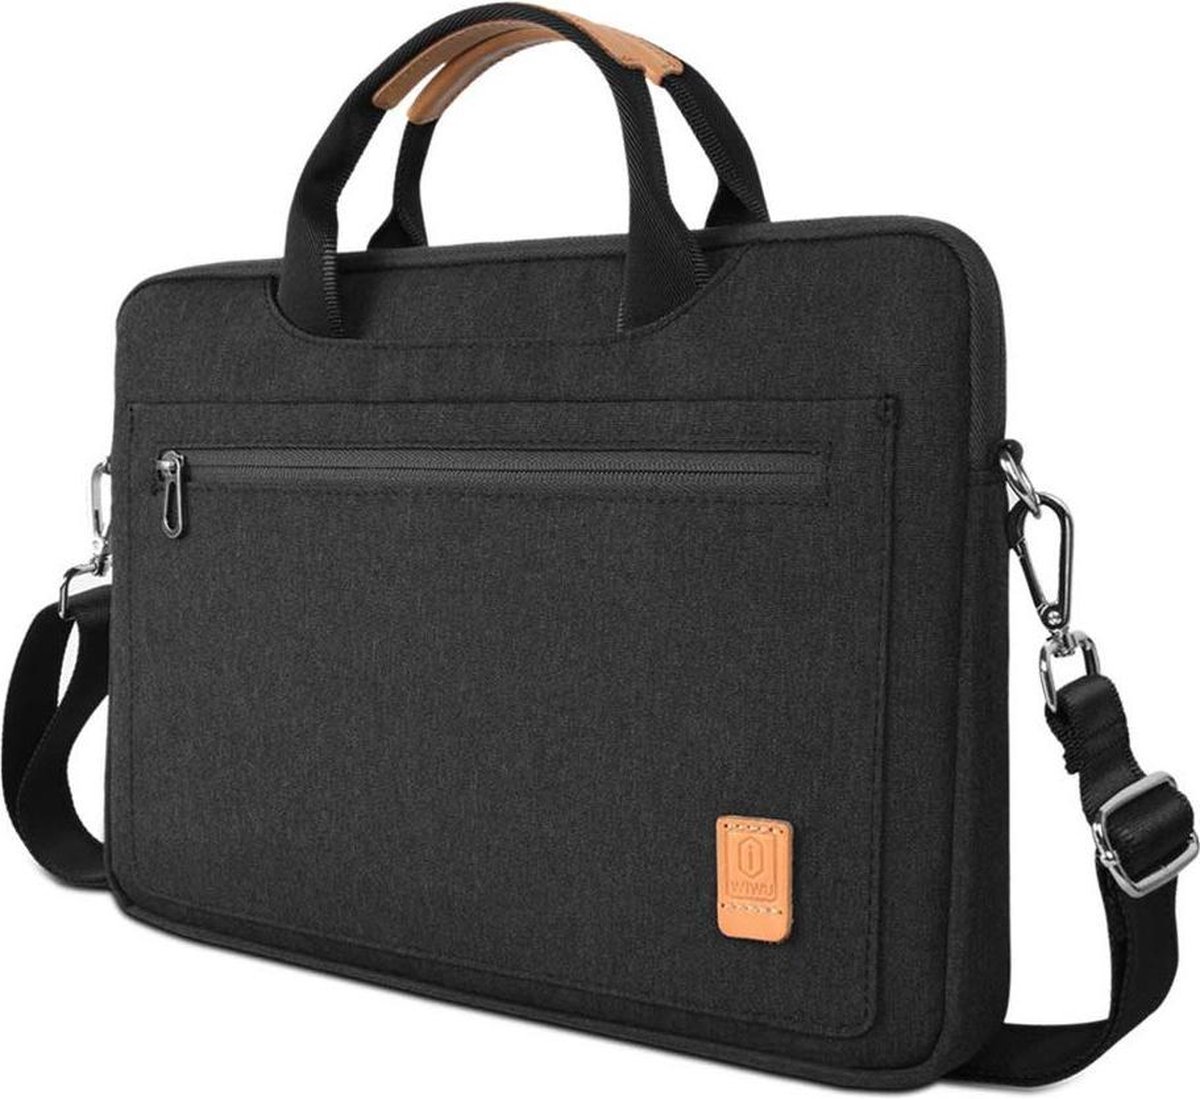 Laptoptas geschikt voor DynaBook Portege - 13.3 inch Pioneer Waterafstotende laptoptas met schouderband - Zwart